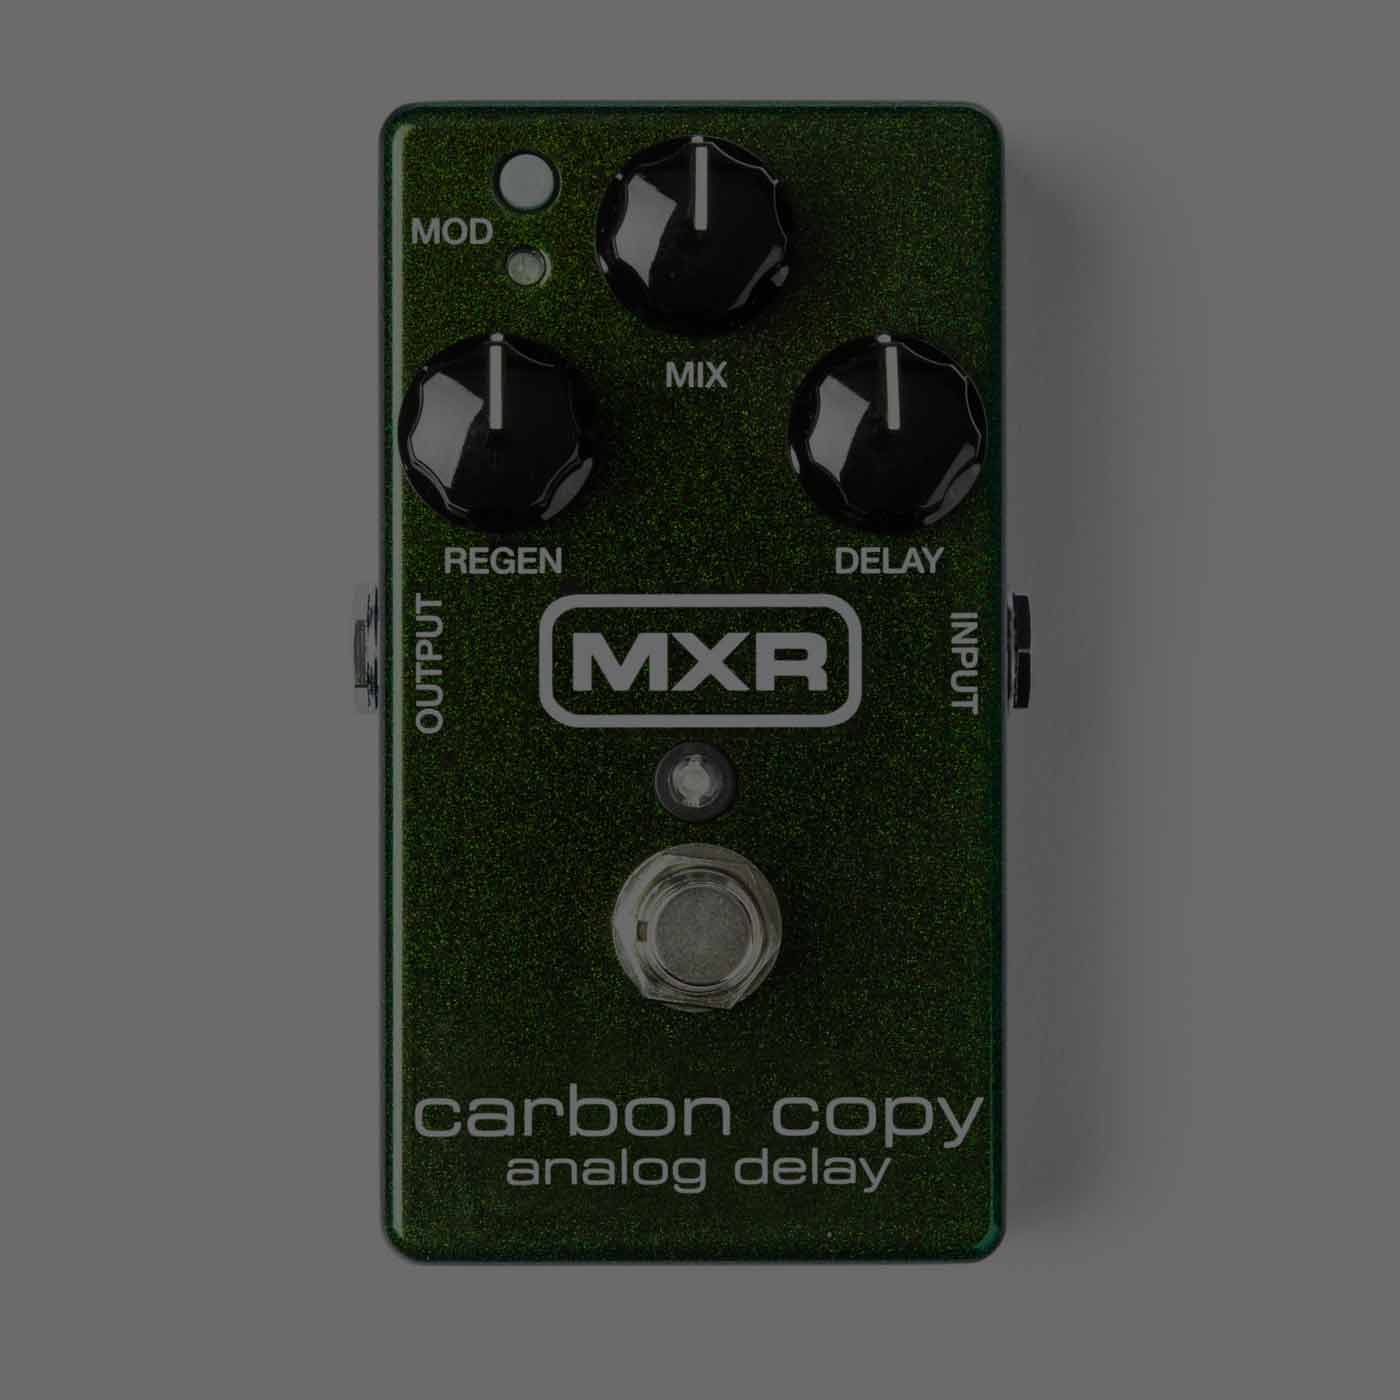 mxr carbon copy guitar pedal